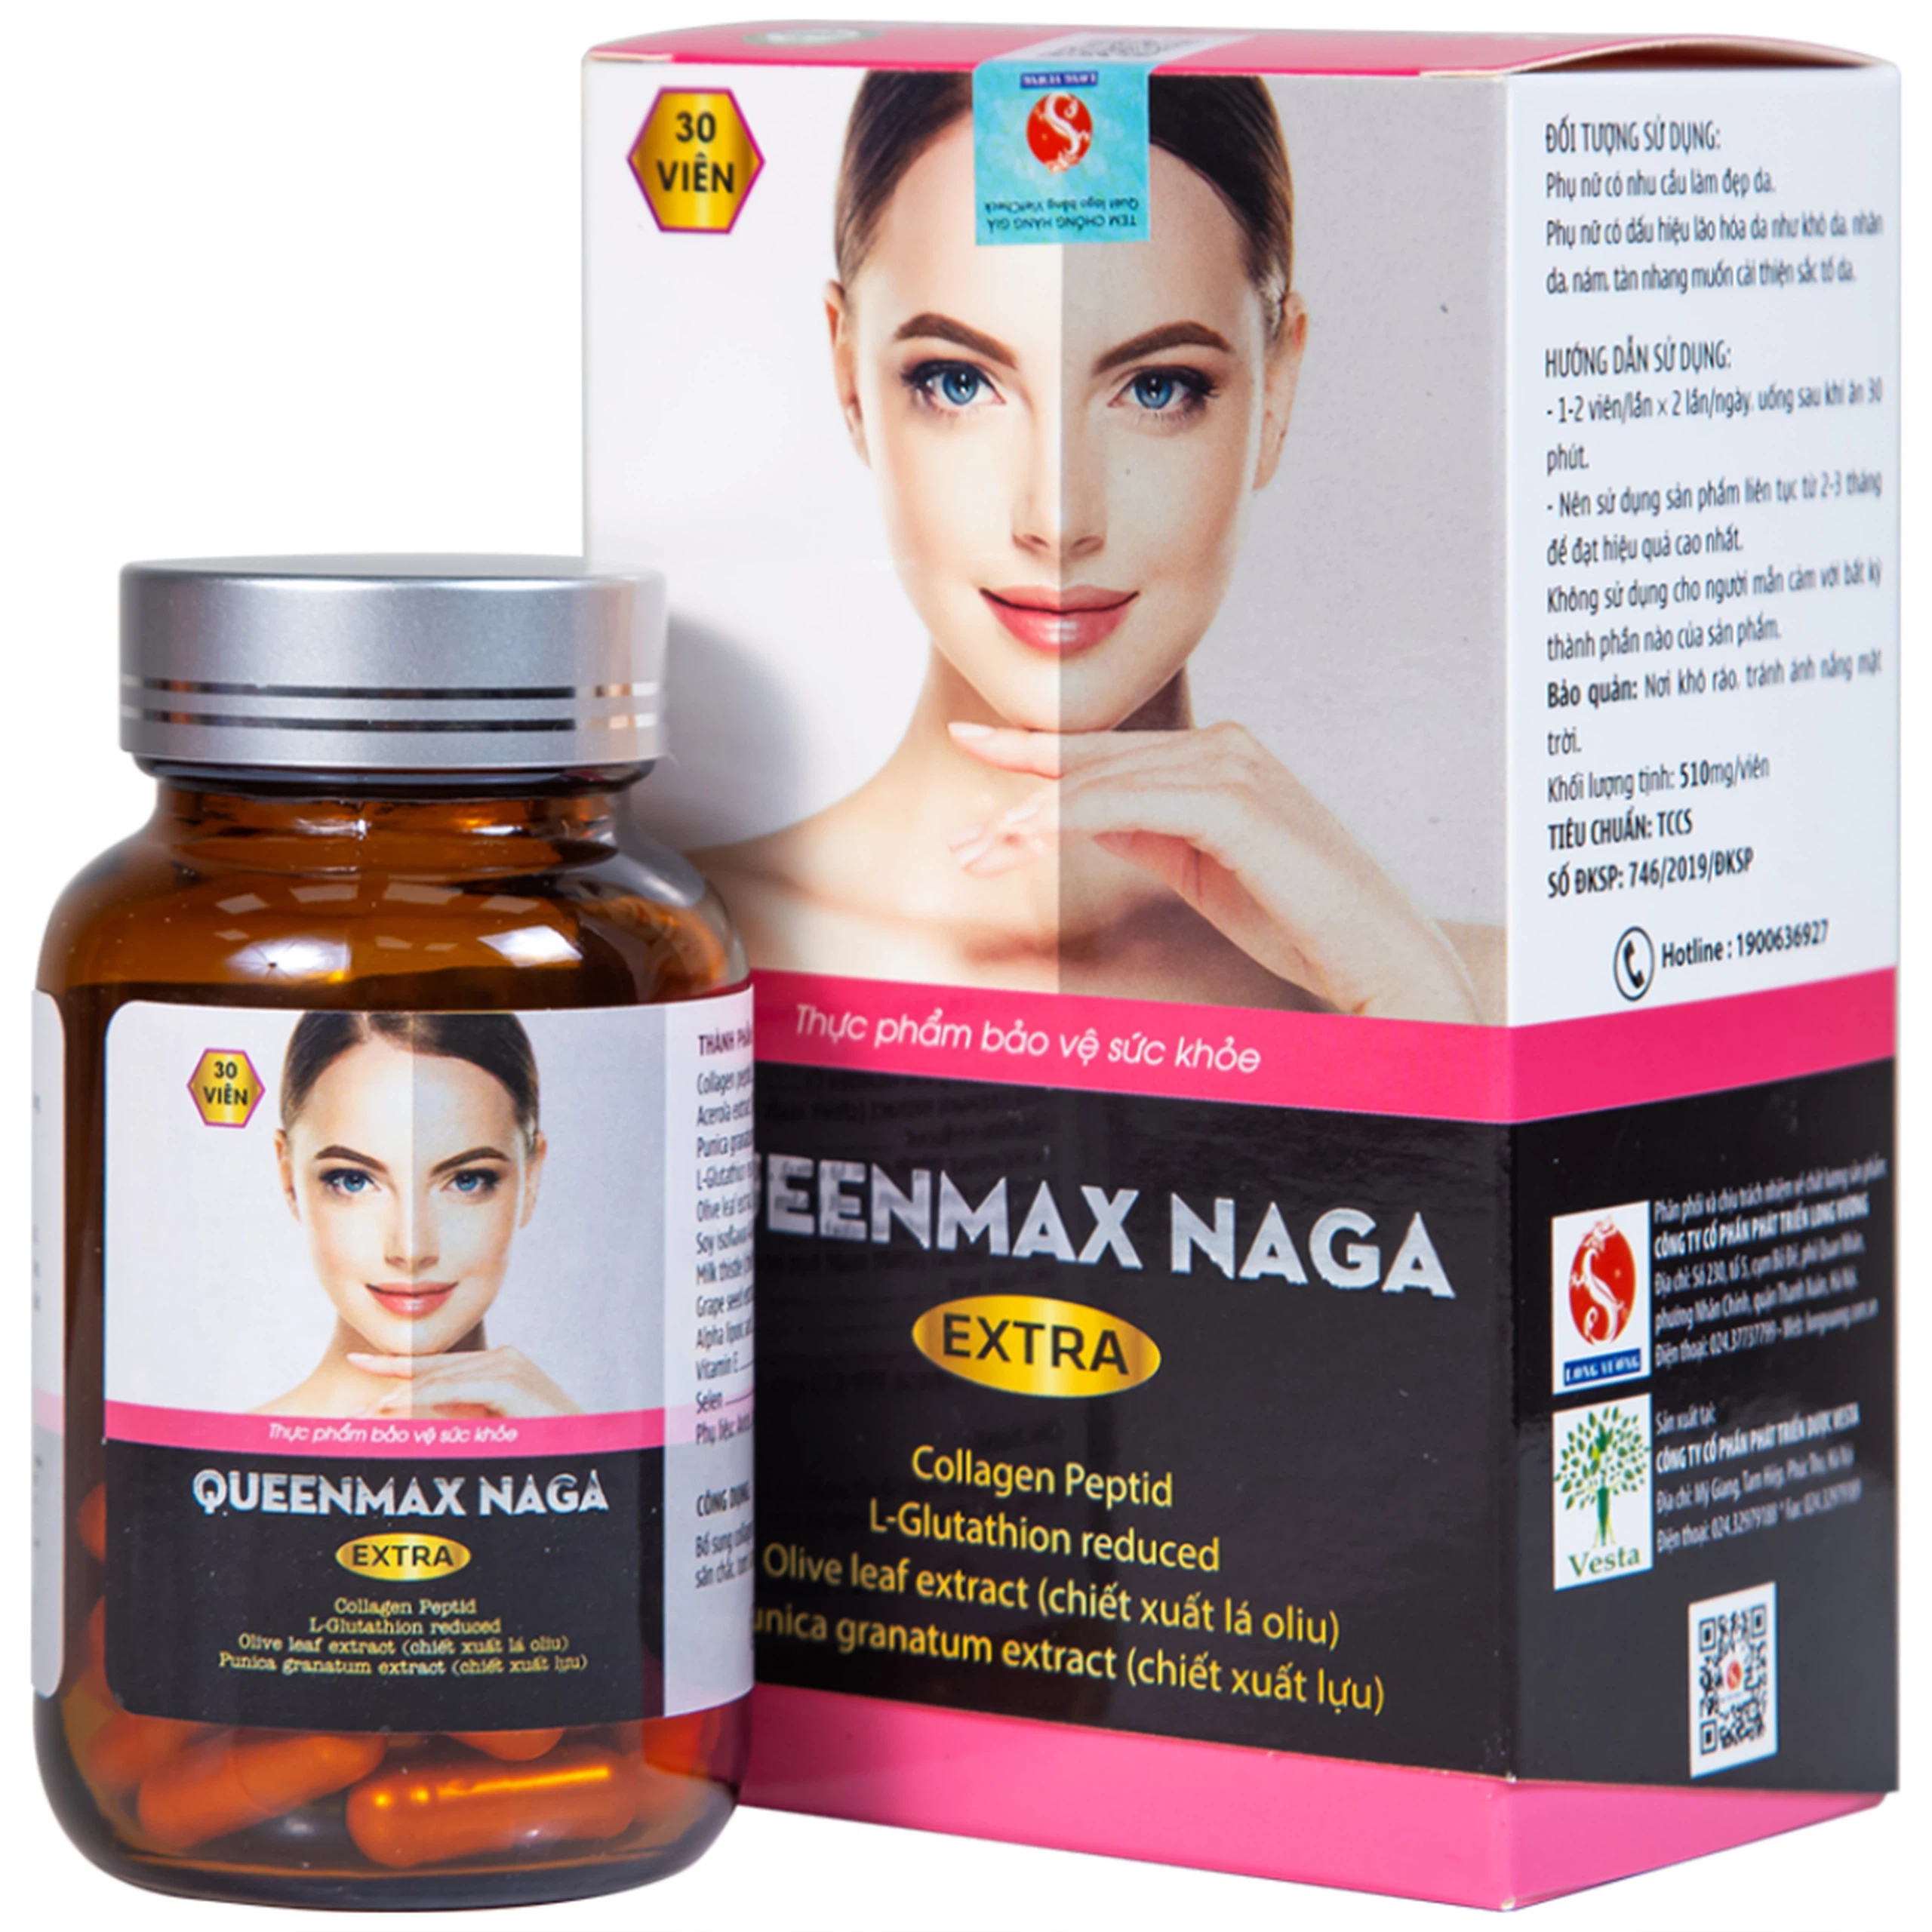 Viên uống Queenmax Naga Extra Vesta bổ sung Collagen, một số Vitamin và khoáng chất (30 viên)